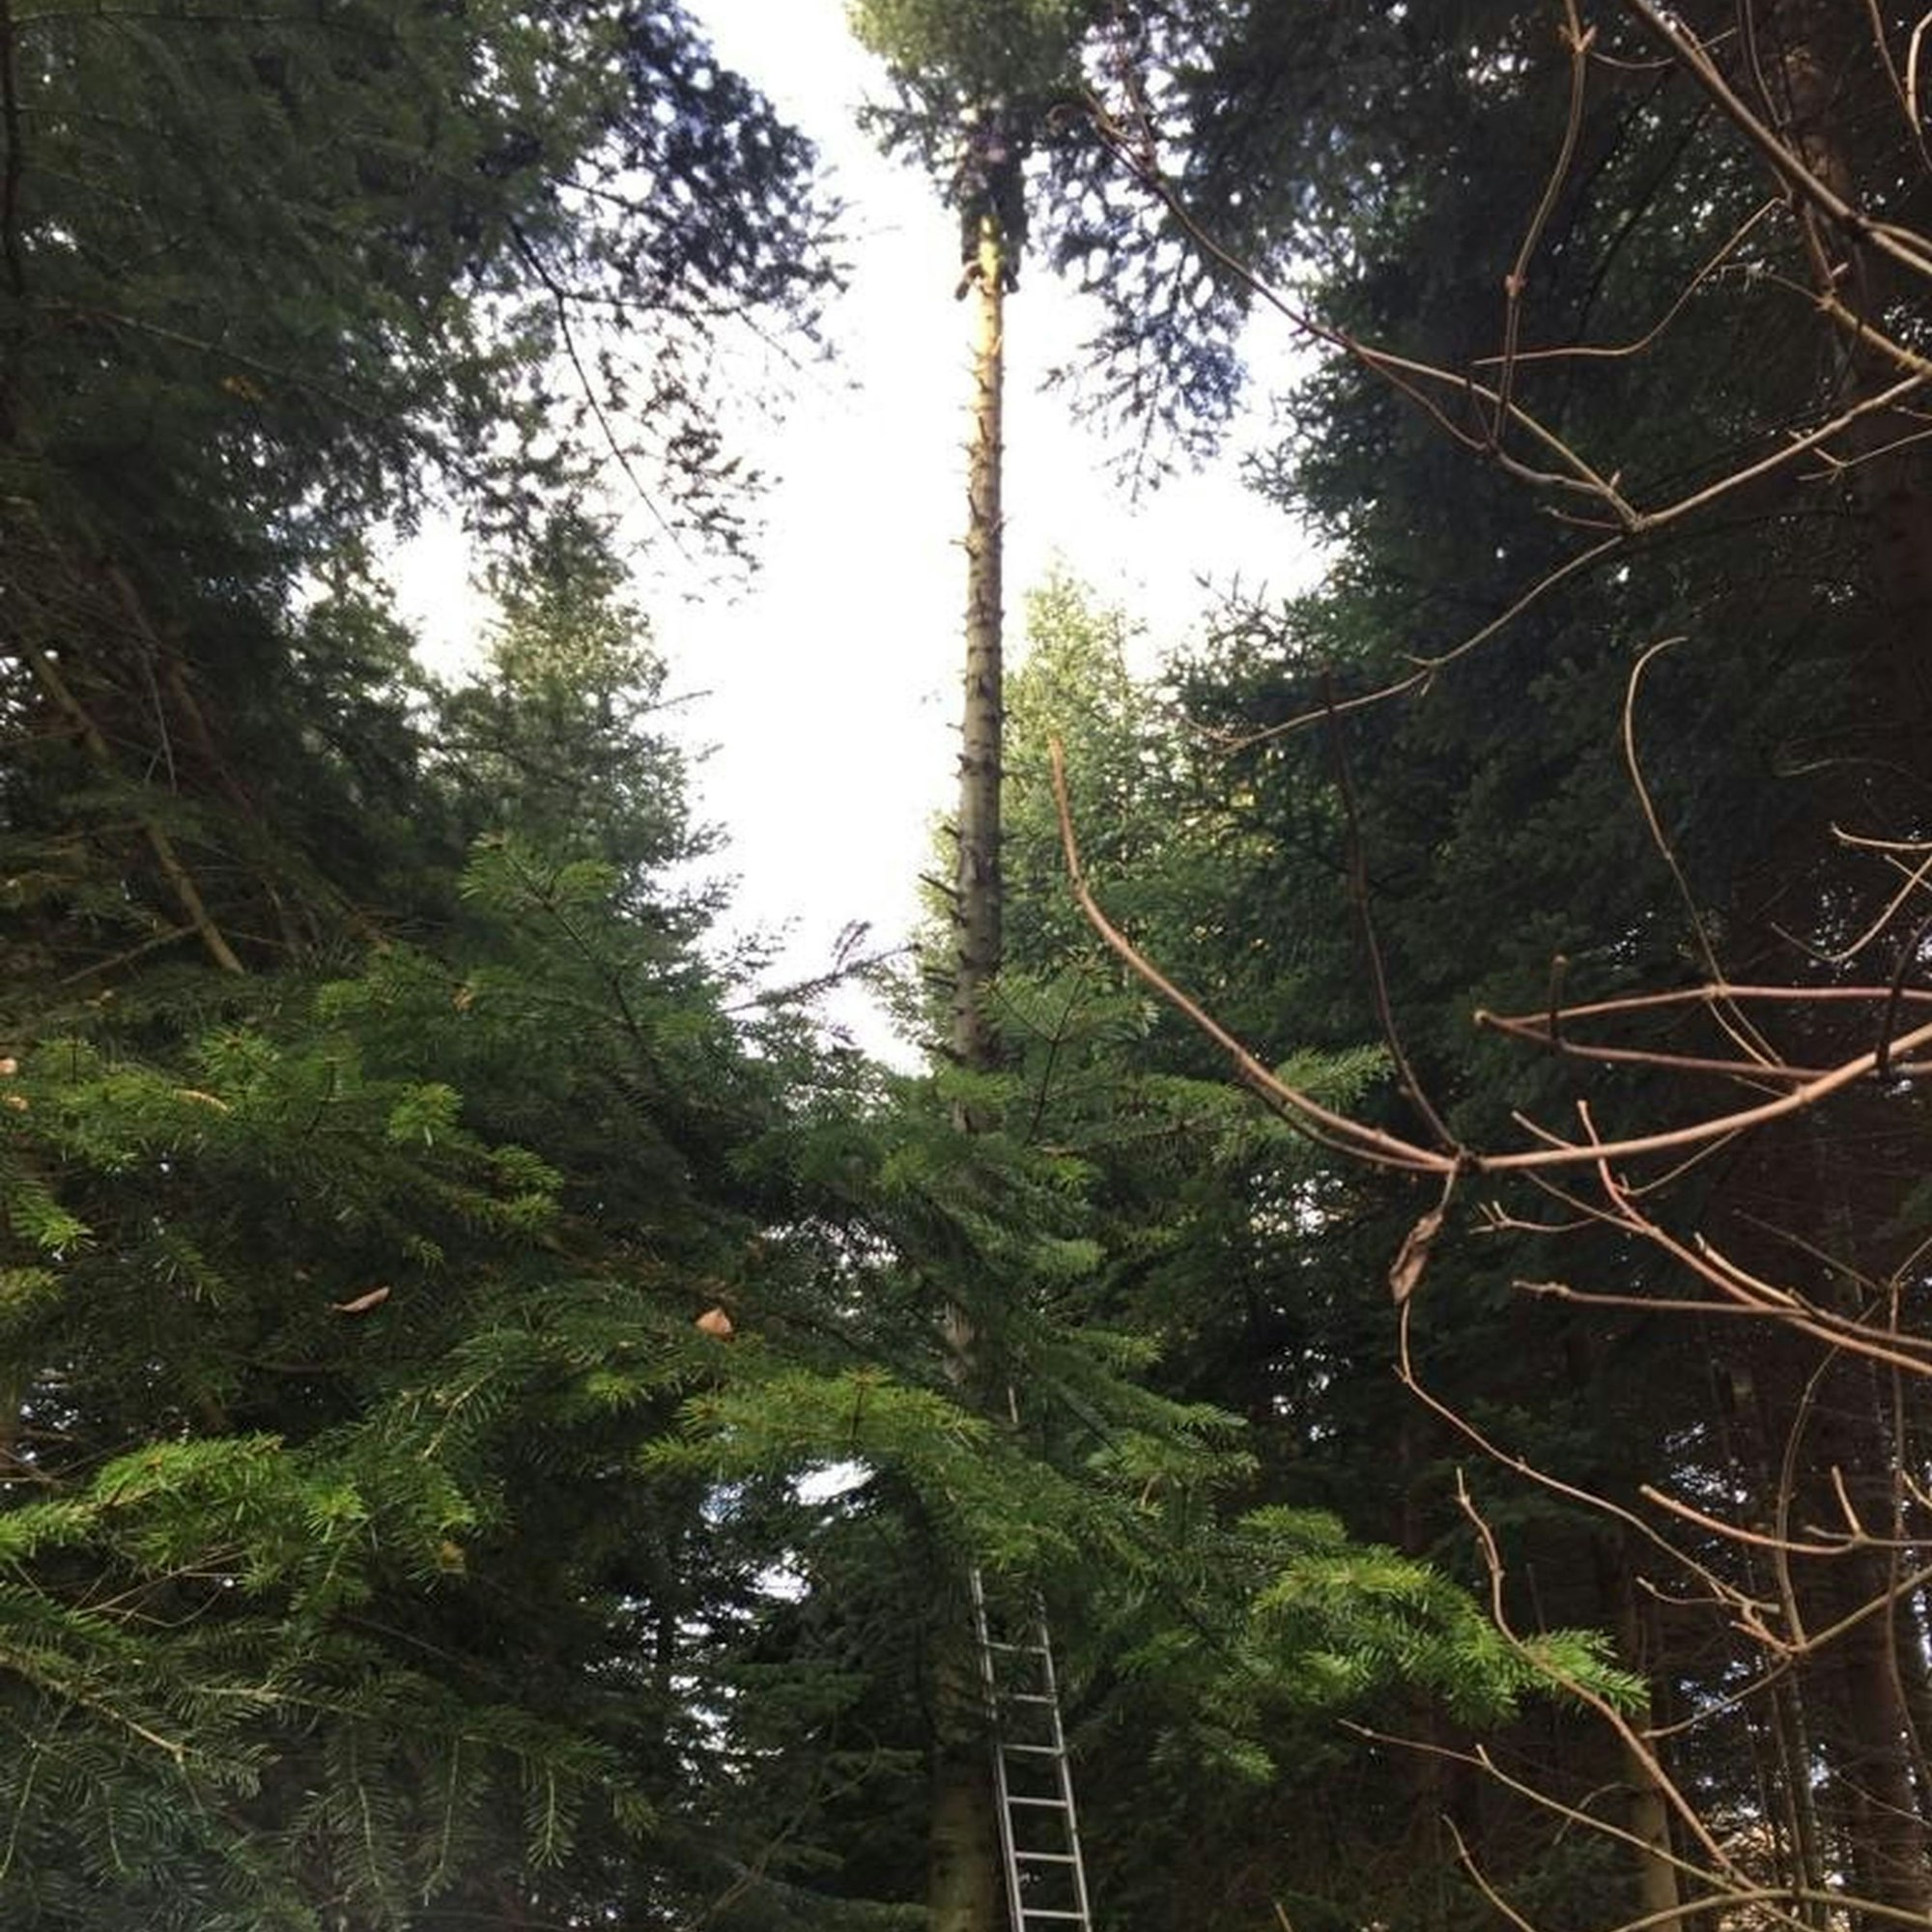 Forstgemeinschaft Henef
Tannengrünernte
Hans Willi Trost in 20 Meter Höhe auf einem Baum in seinem Wald bei Hennef-Bödingen.